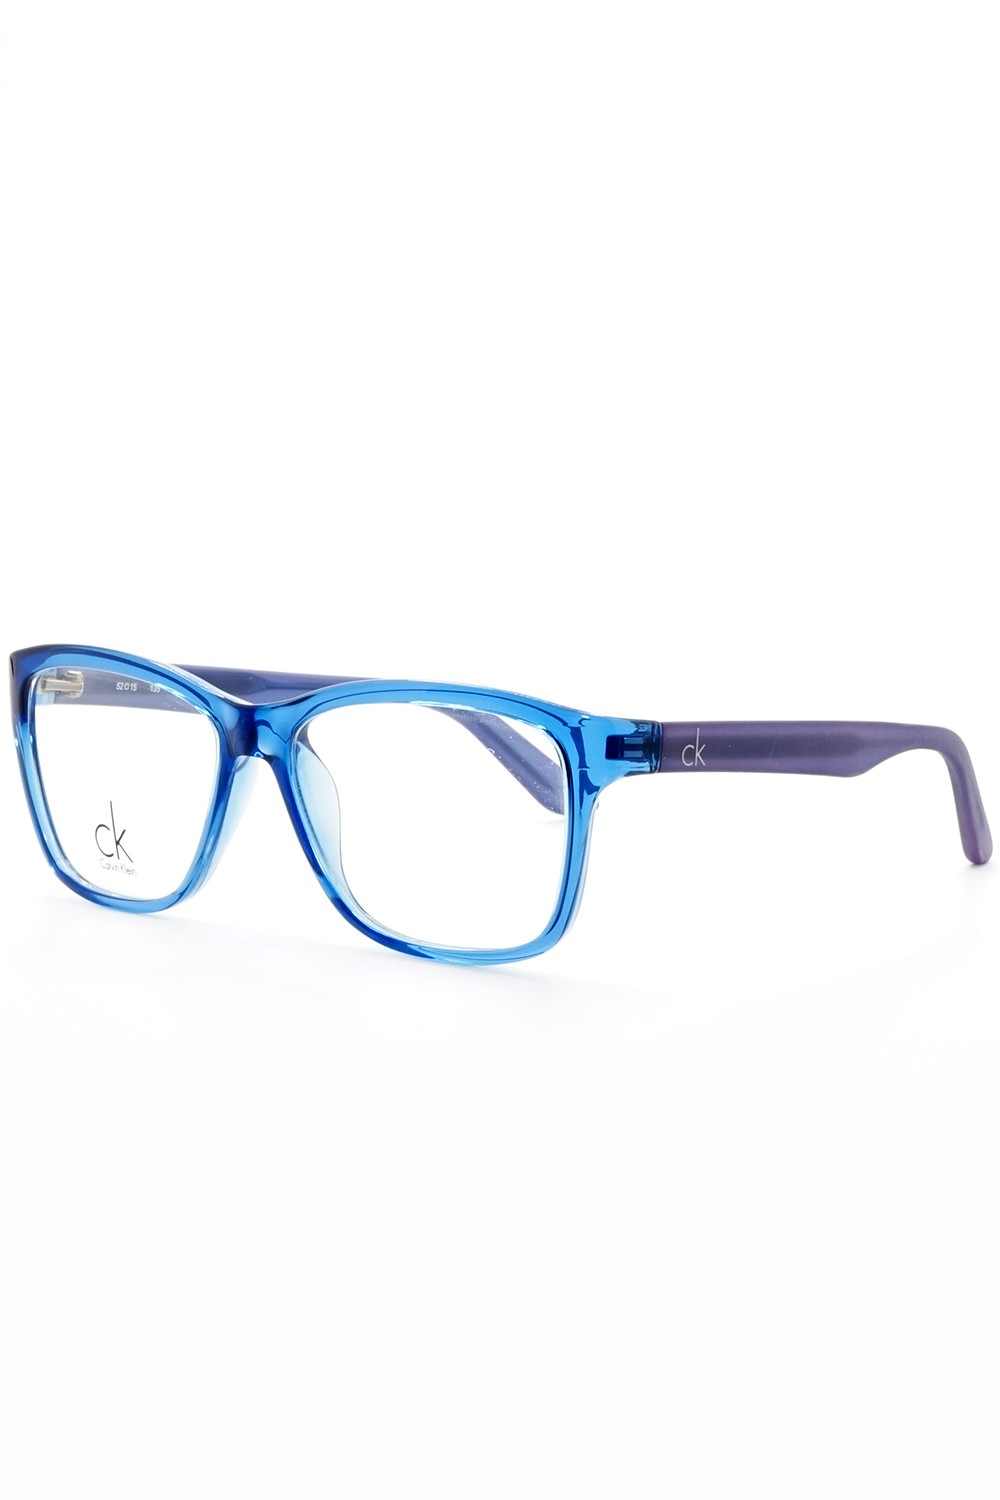 Calvin Klein - Occhiali da vista in celluloide squadrati per uomo blu - CK5827